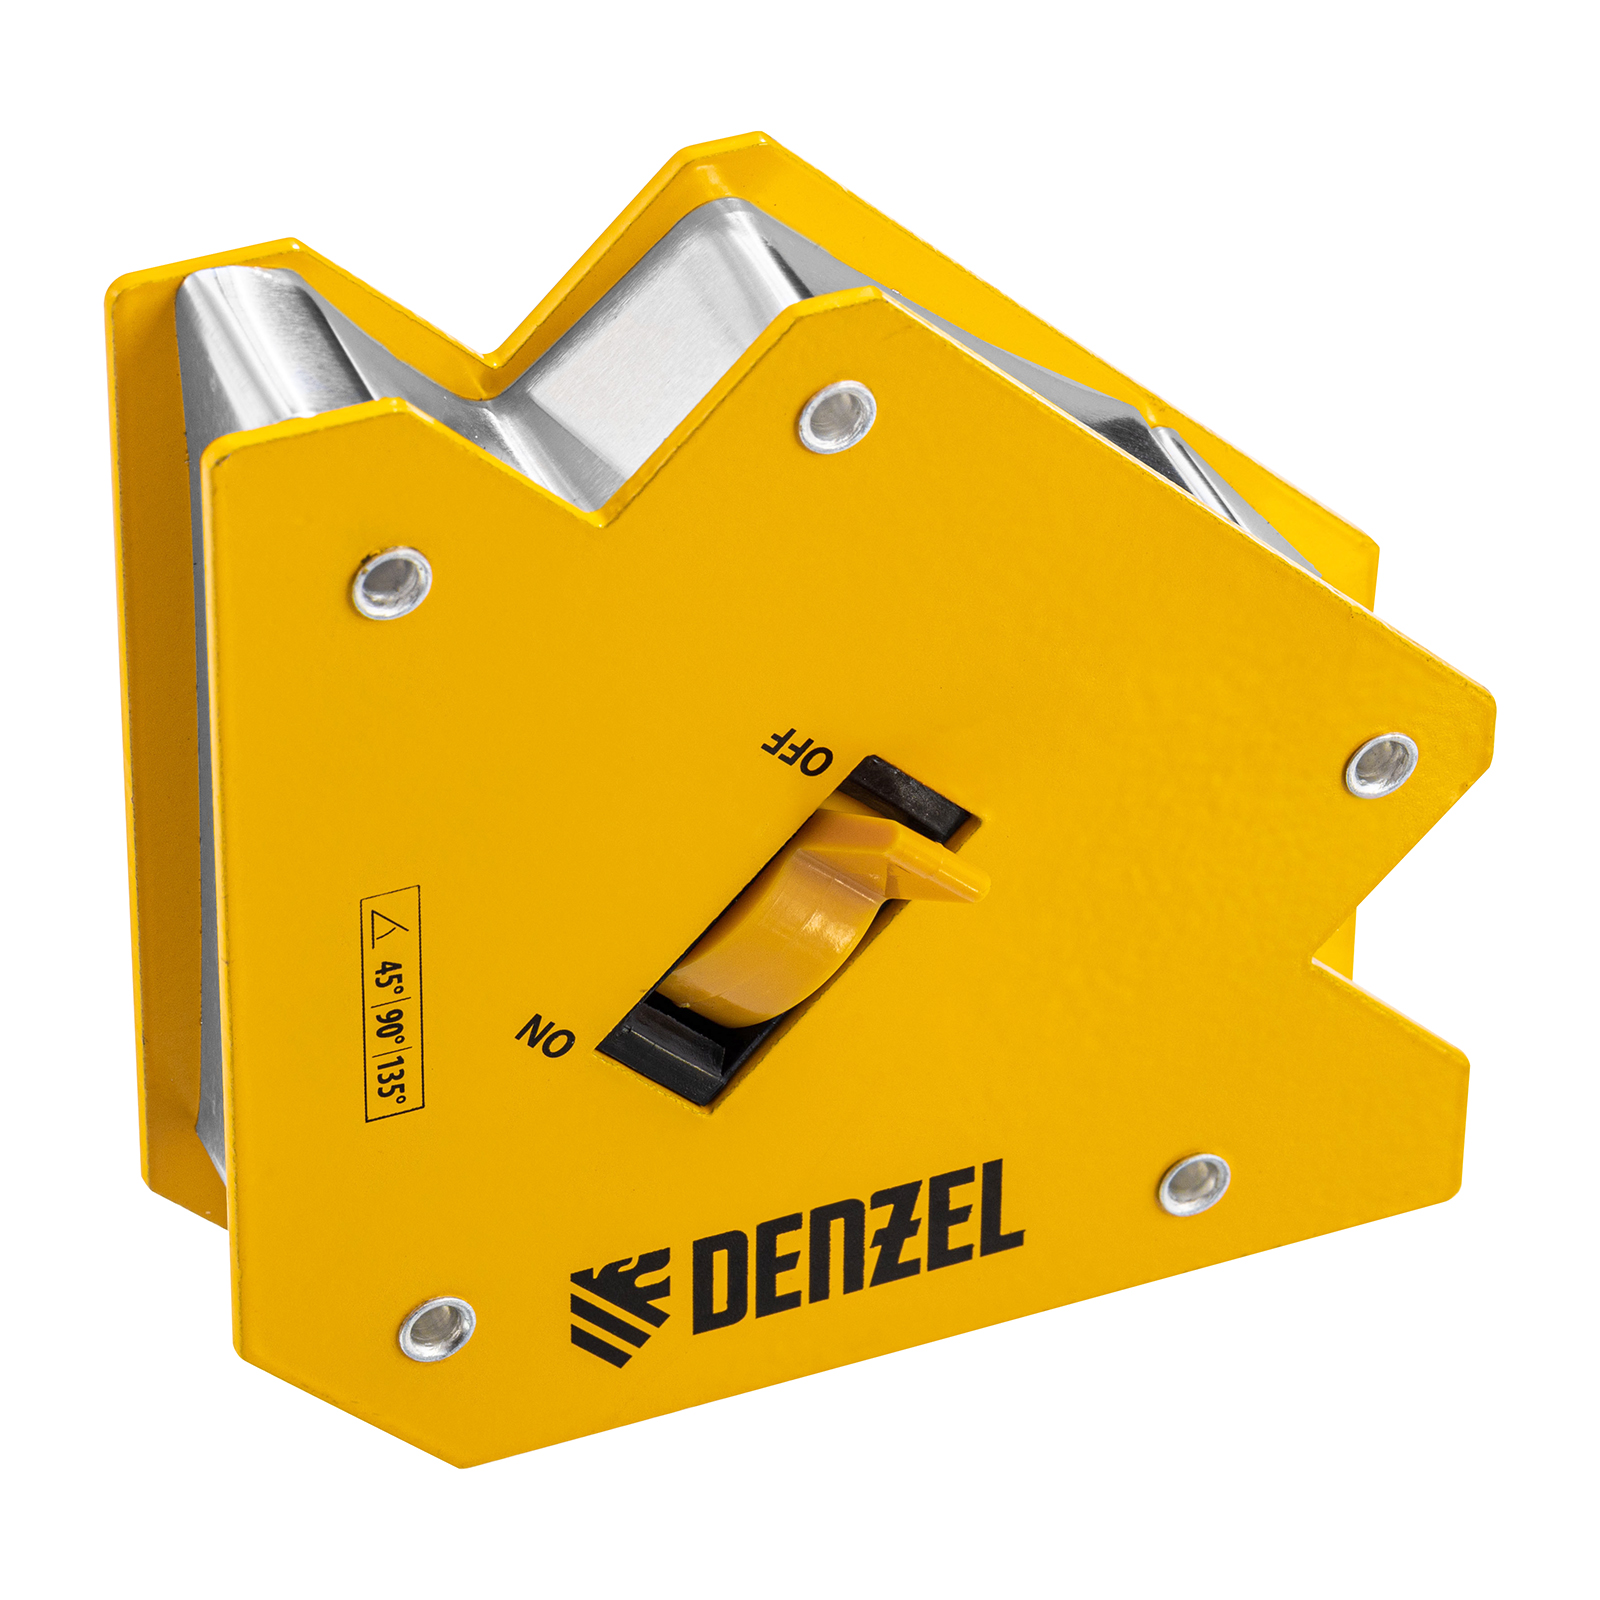 Фиксатор магнитный отключаемый для сварочных работ DENZEL усилие 30 LB, 45х90х135 гр 97563 фиксатор магнитный отключаемый для сварочных работ denzel усилие 30 lb 45х90 град 97561